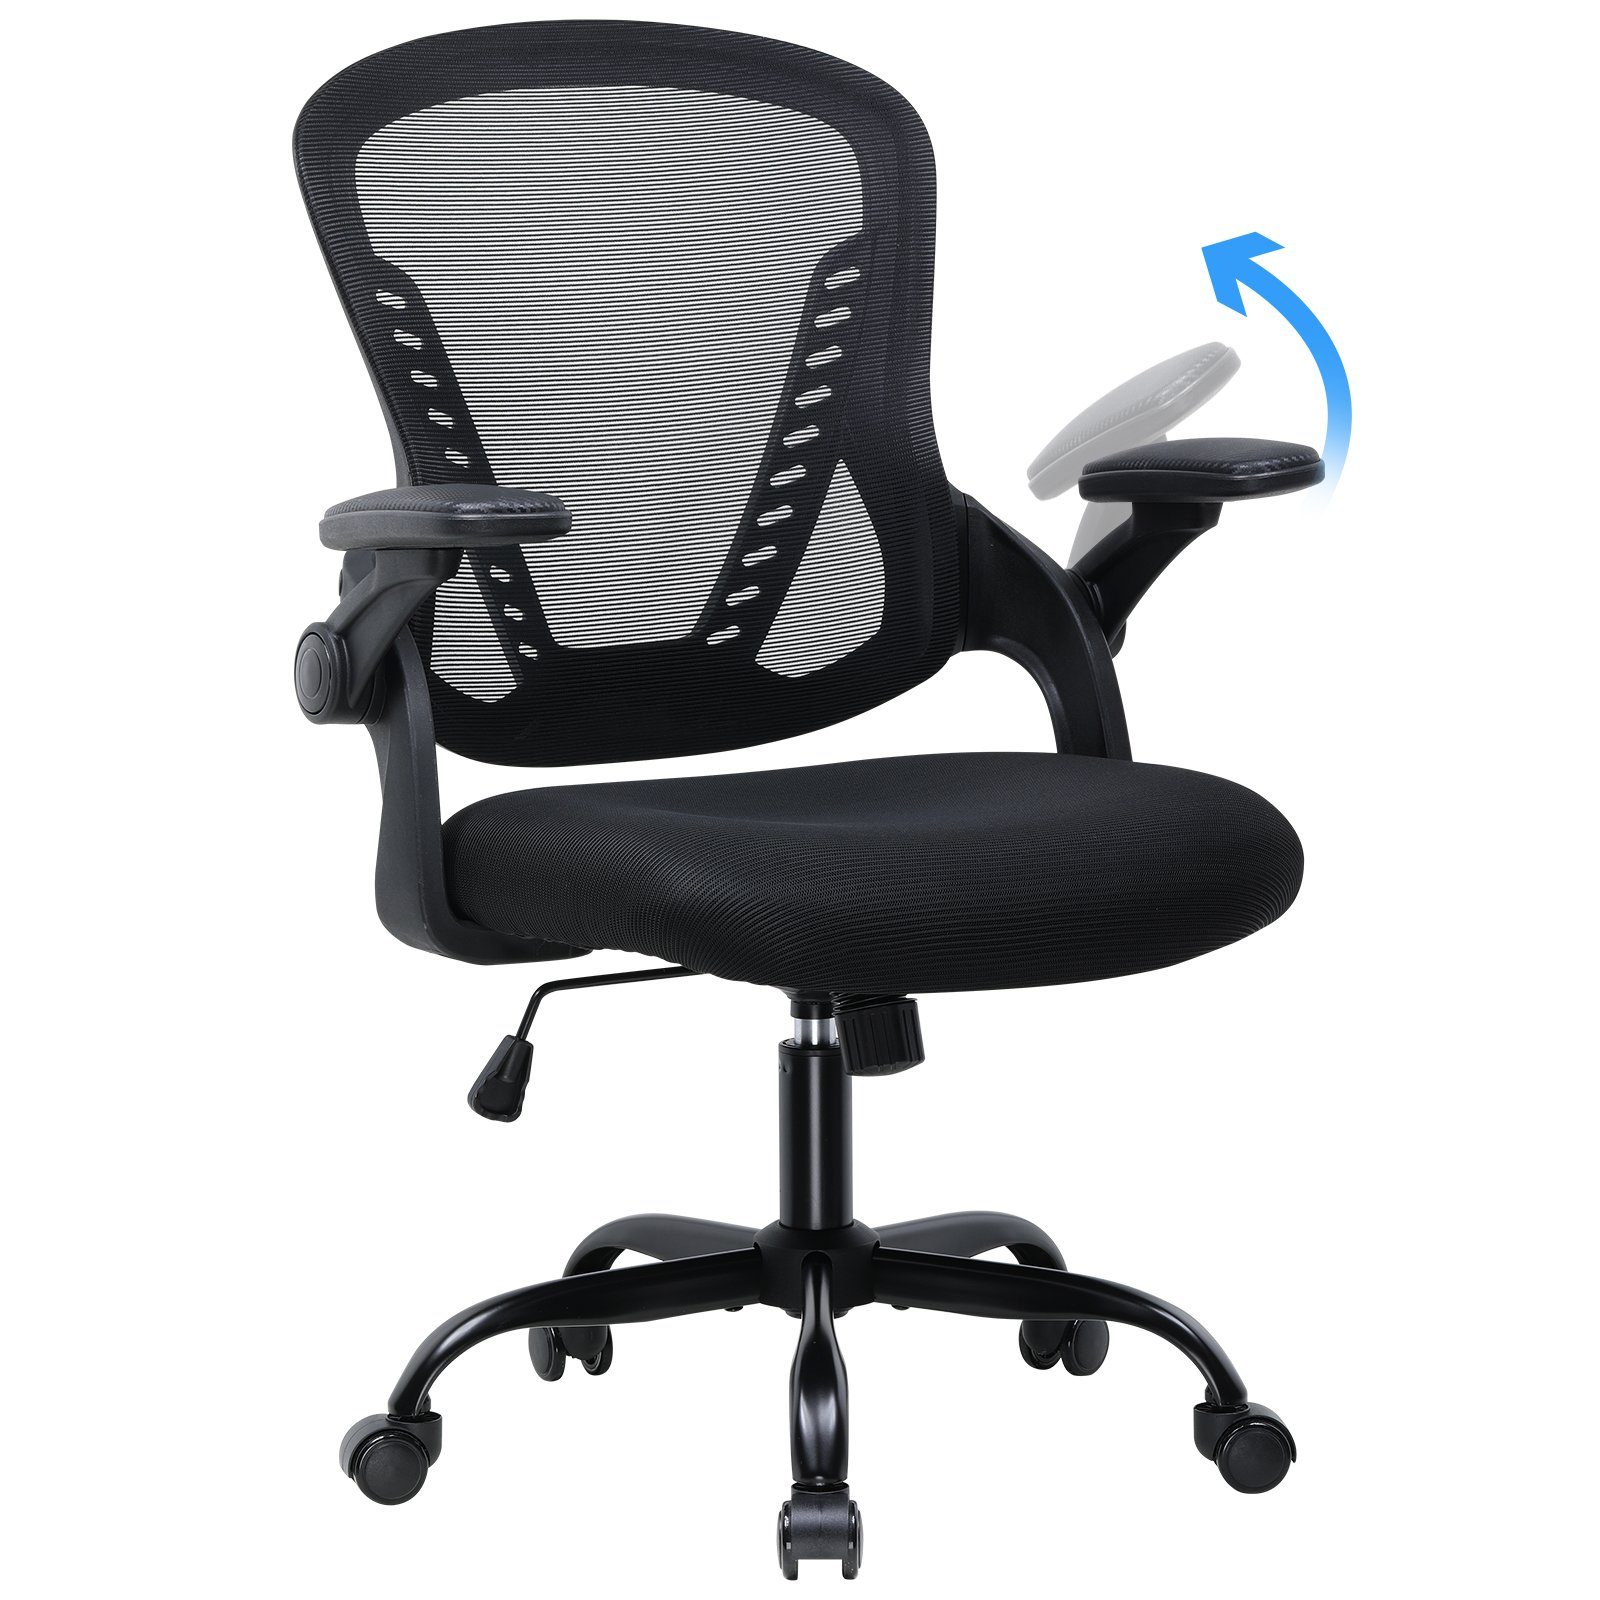 COMHOMA Bürostuhl Ergonomischer Schreibtischstuhl, Chefsessel, Drehstuhl, Verstellbare Armlehnen Wippfunktion von 90° bis 125°